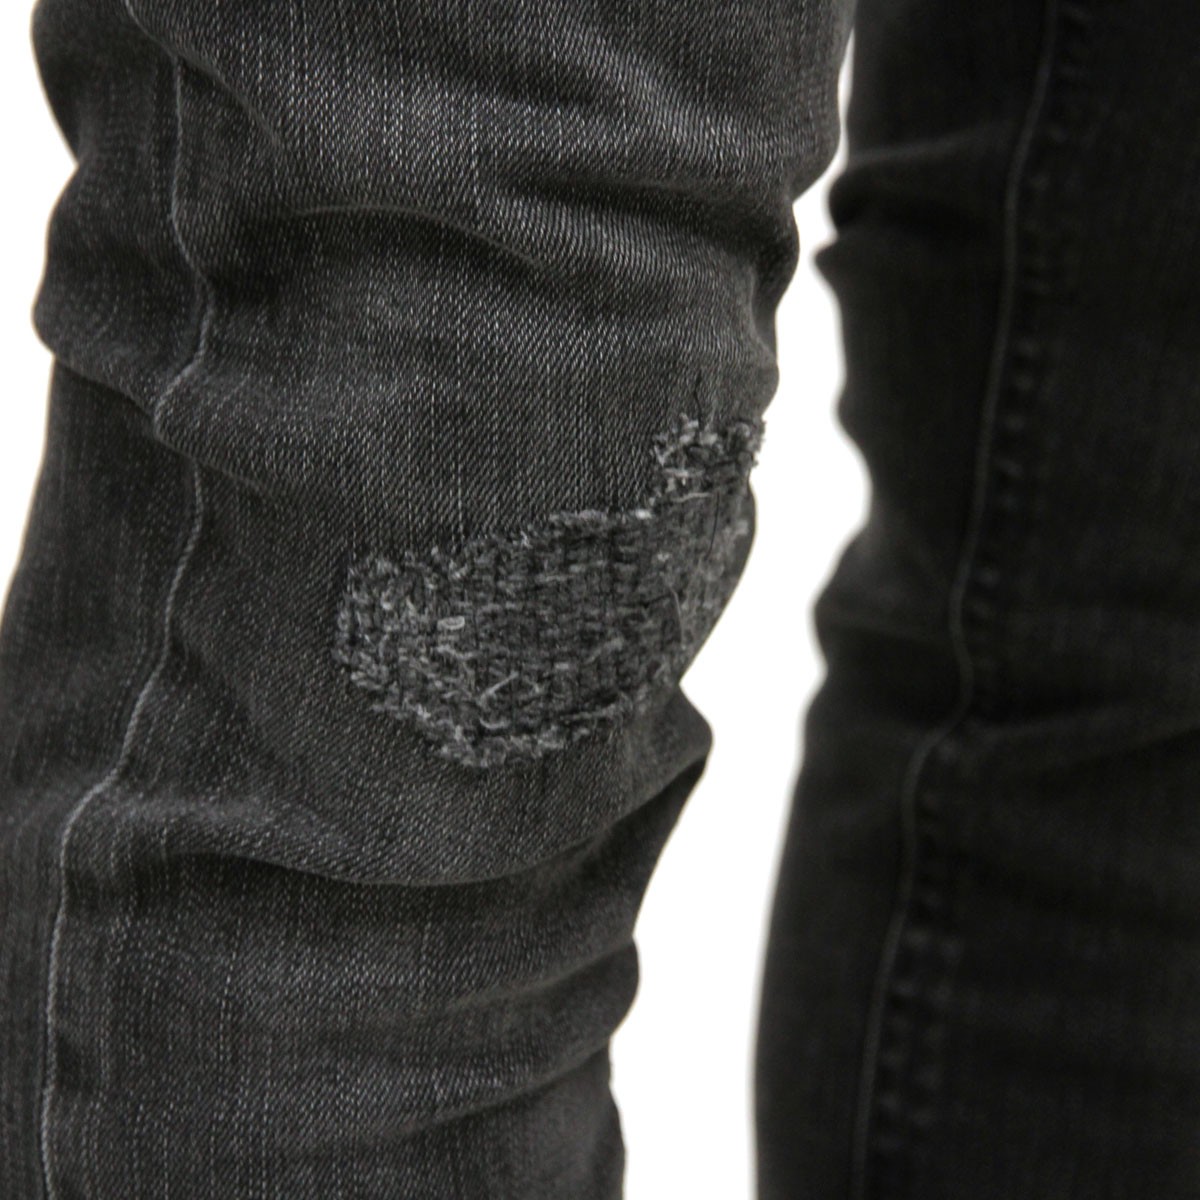 予約商品 10月頃入荷予定 ヌーディージーンズ Nudie Jeans 正規販売店 メンズ ジーンズ Lean Dean 654 Grey Patch 112144